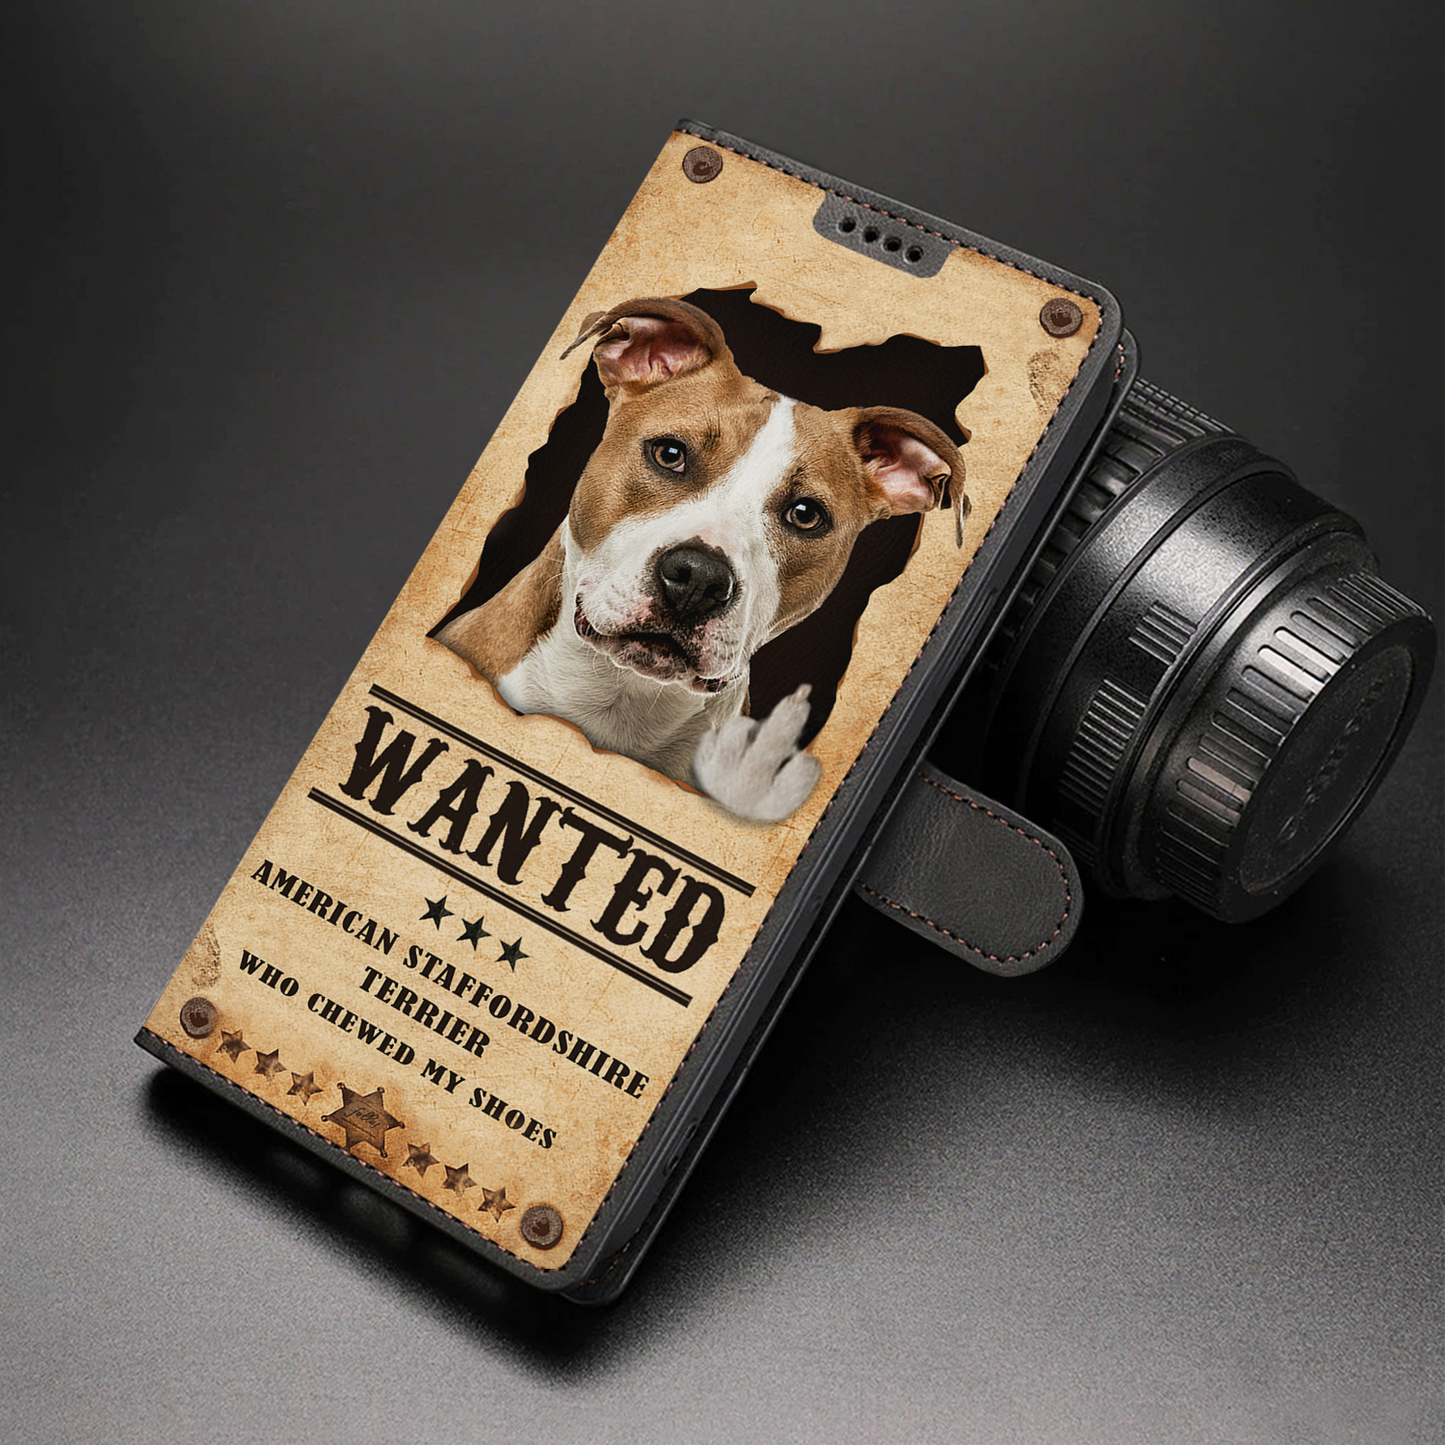 American Staffordshire Terrier Wanted - Étui portefeuille amusant pour téléphone V1